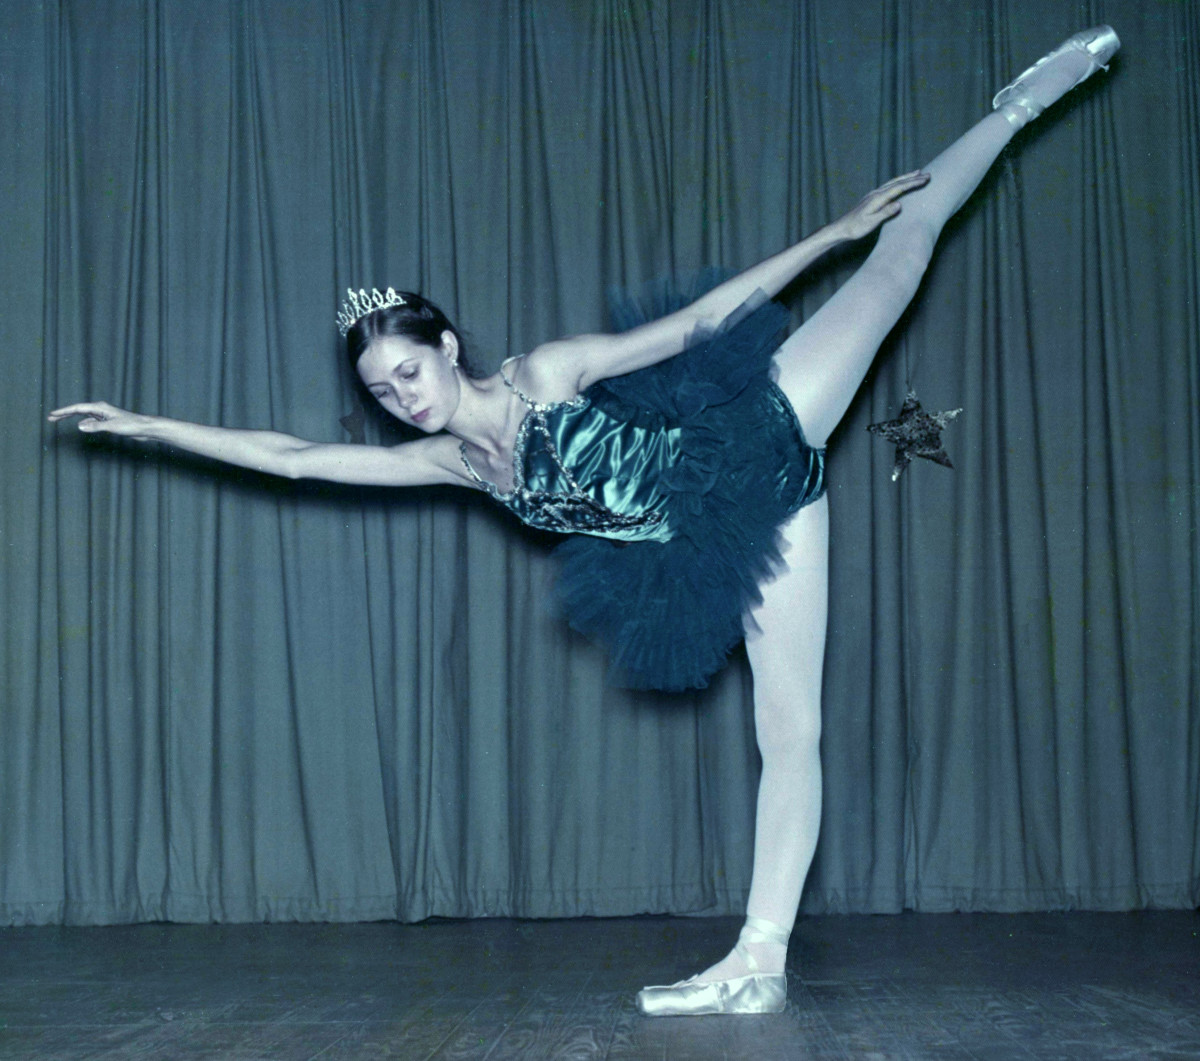 My Glory Days as a Ballet Dancer